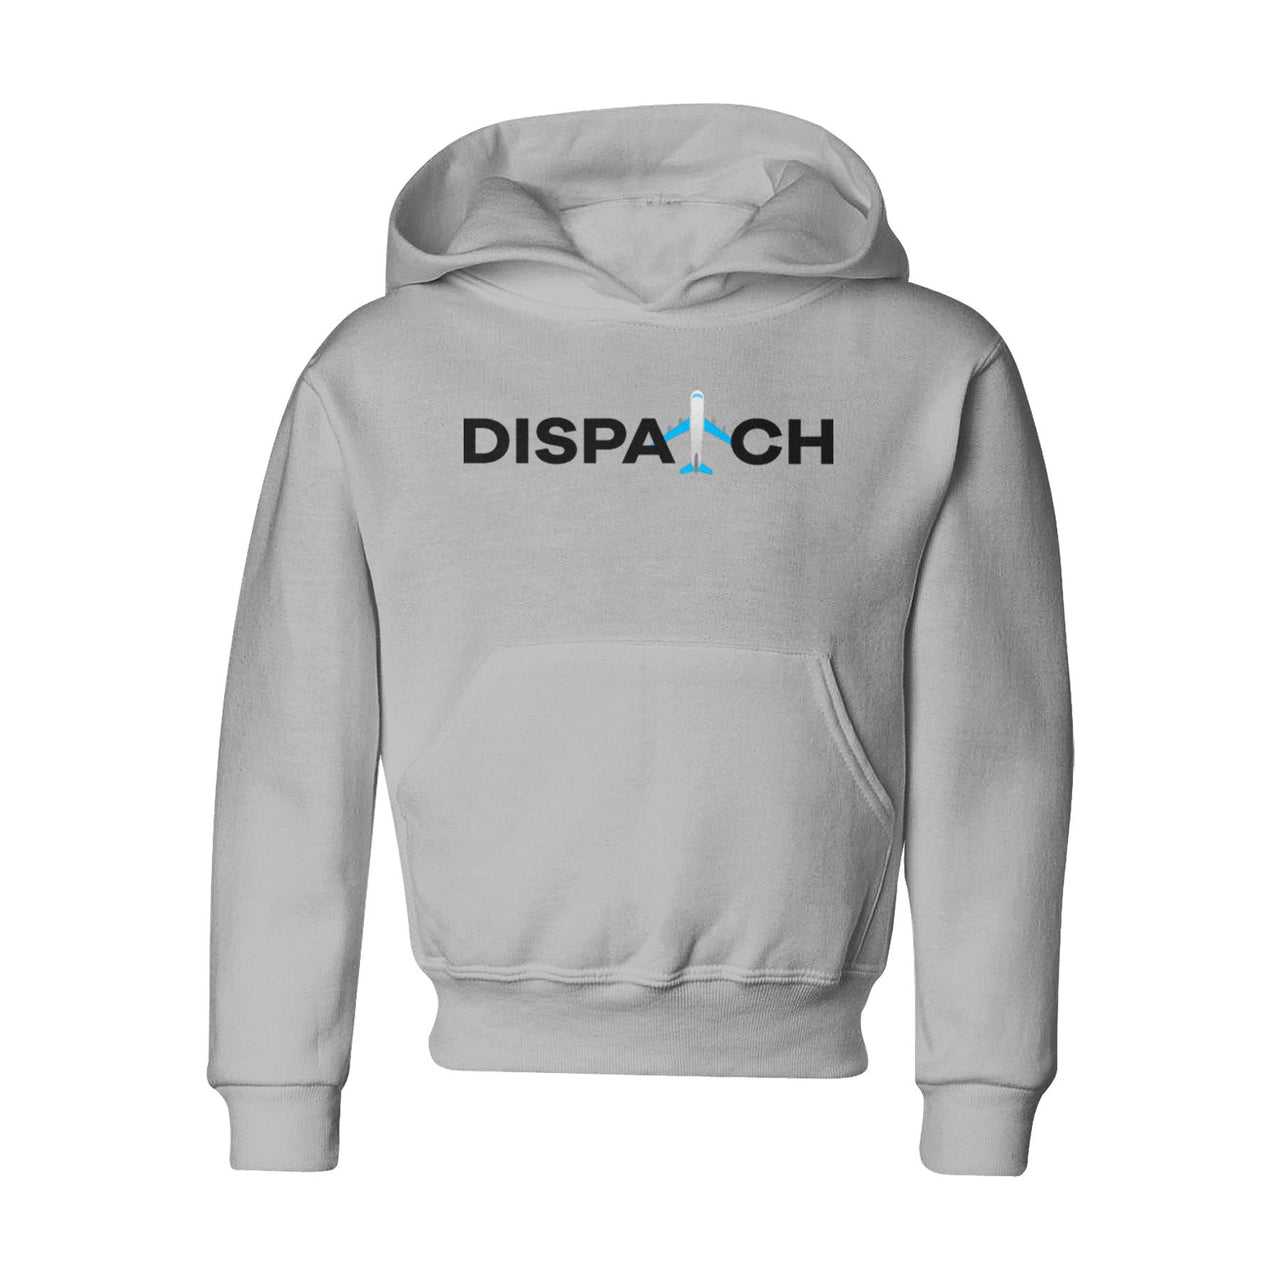 Dispatch Designed "CHILDREN" Hoodies